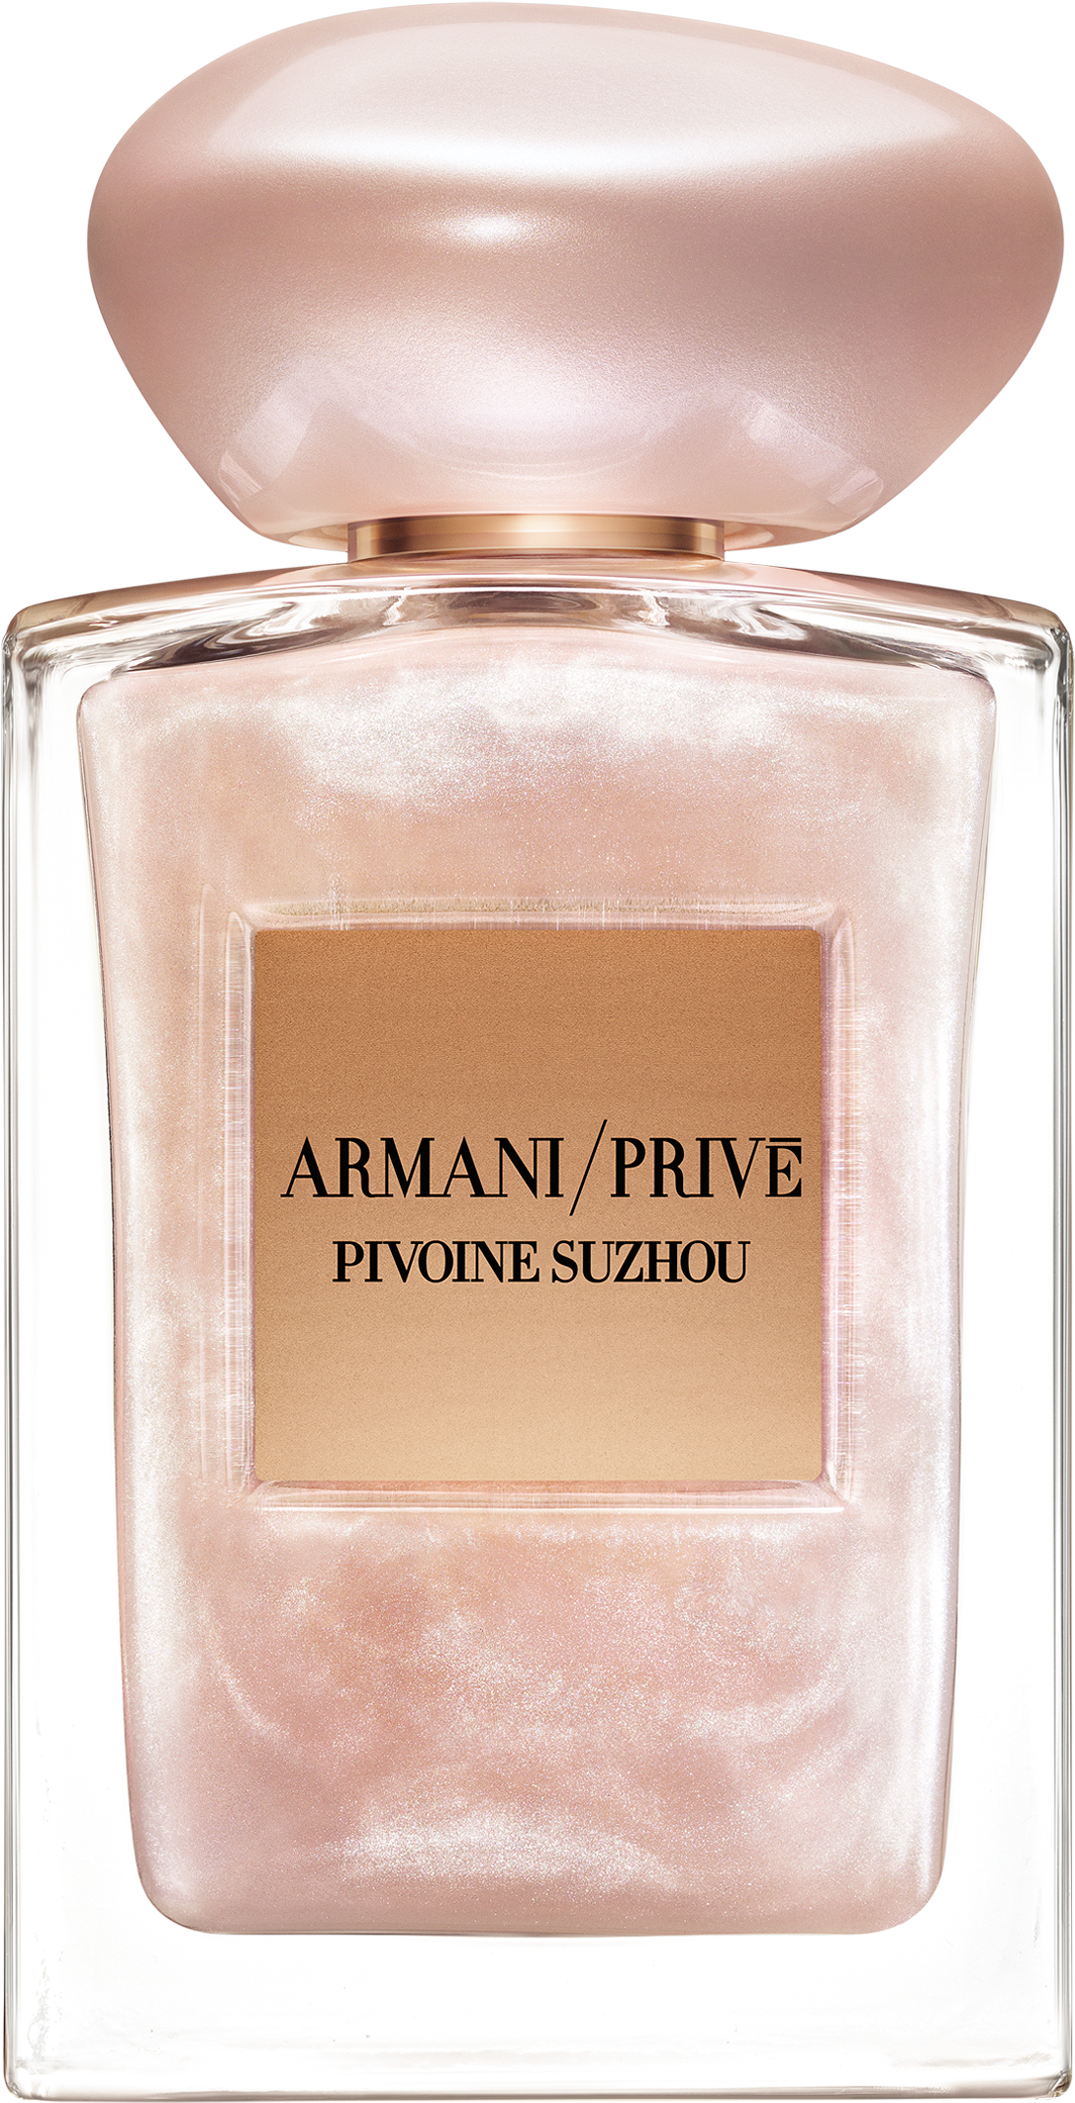 Pivoine Suzhou Soie De Nacre Fragrance - Armani Prive Pivoine Suzhou Limited Edition (2400x2400), Png Download